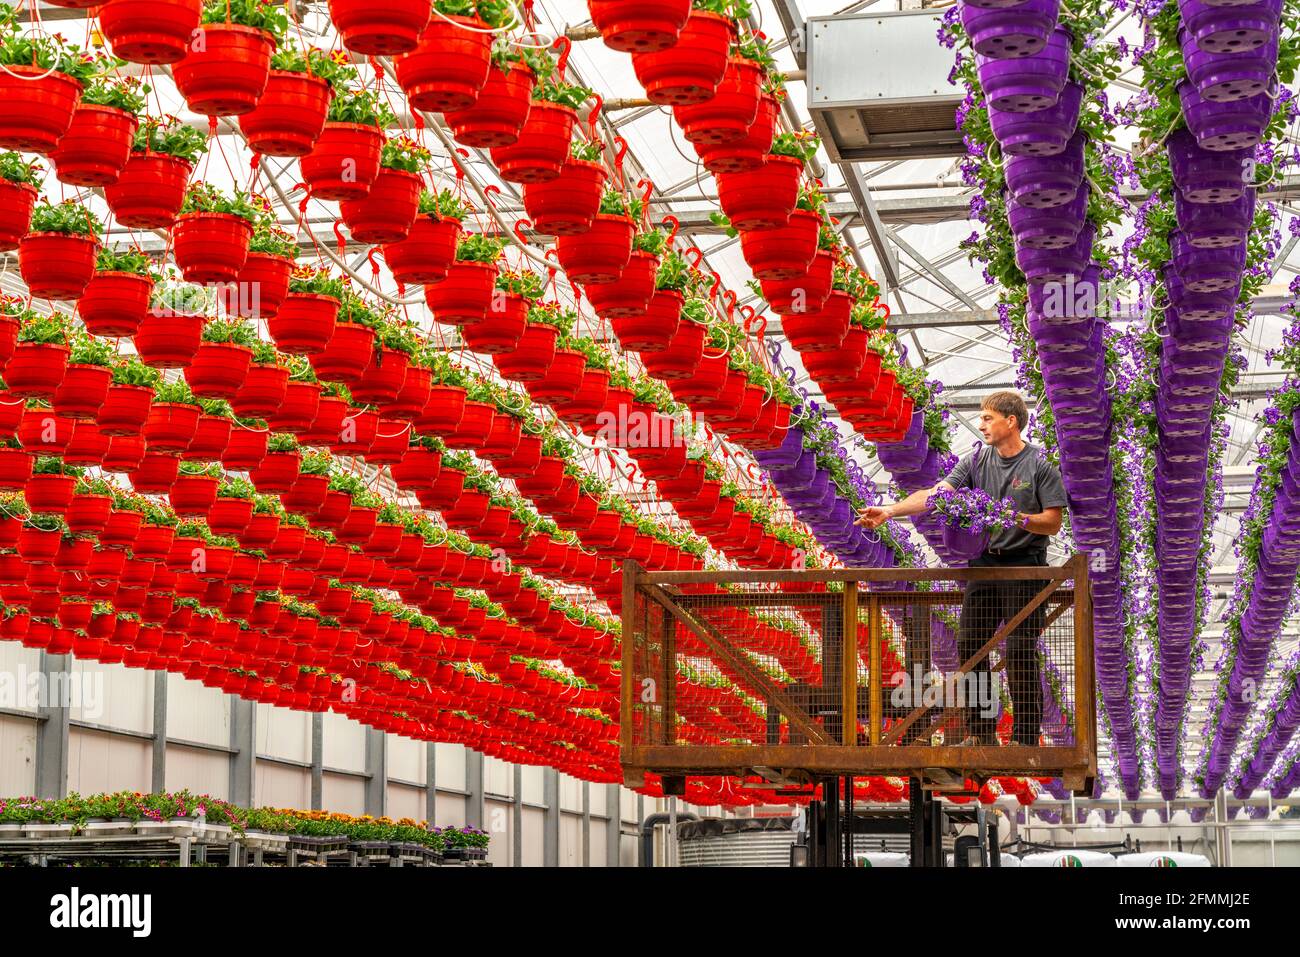 Gartenbau Betrieb, rund 3000 Töpfe, s.g. Petunien-Ampeln, wachsen in einem Gewächshaus, bis sie das richtige Wachstums Stadium für den Einzelhandel ha Foto Stock